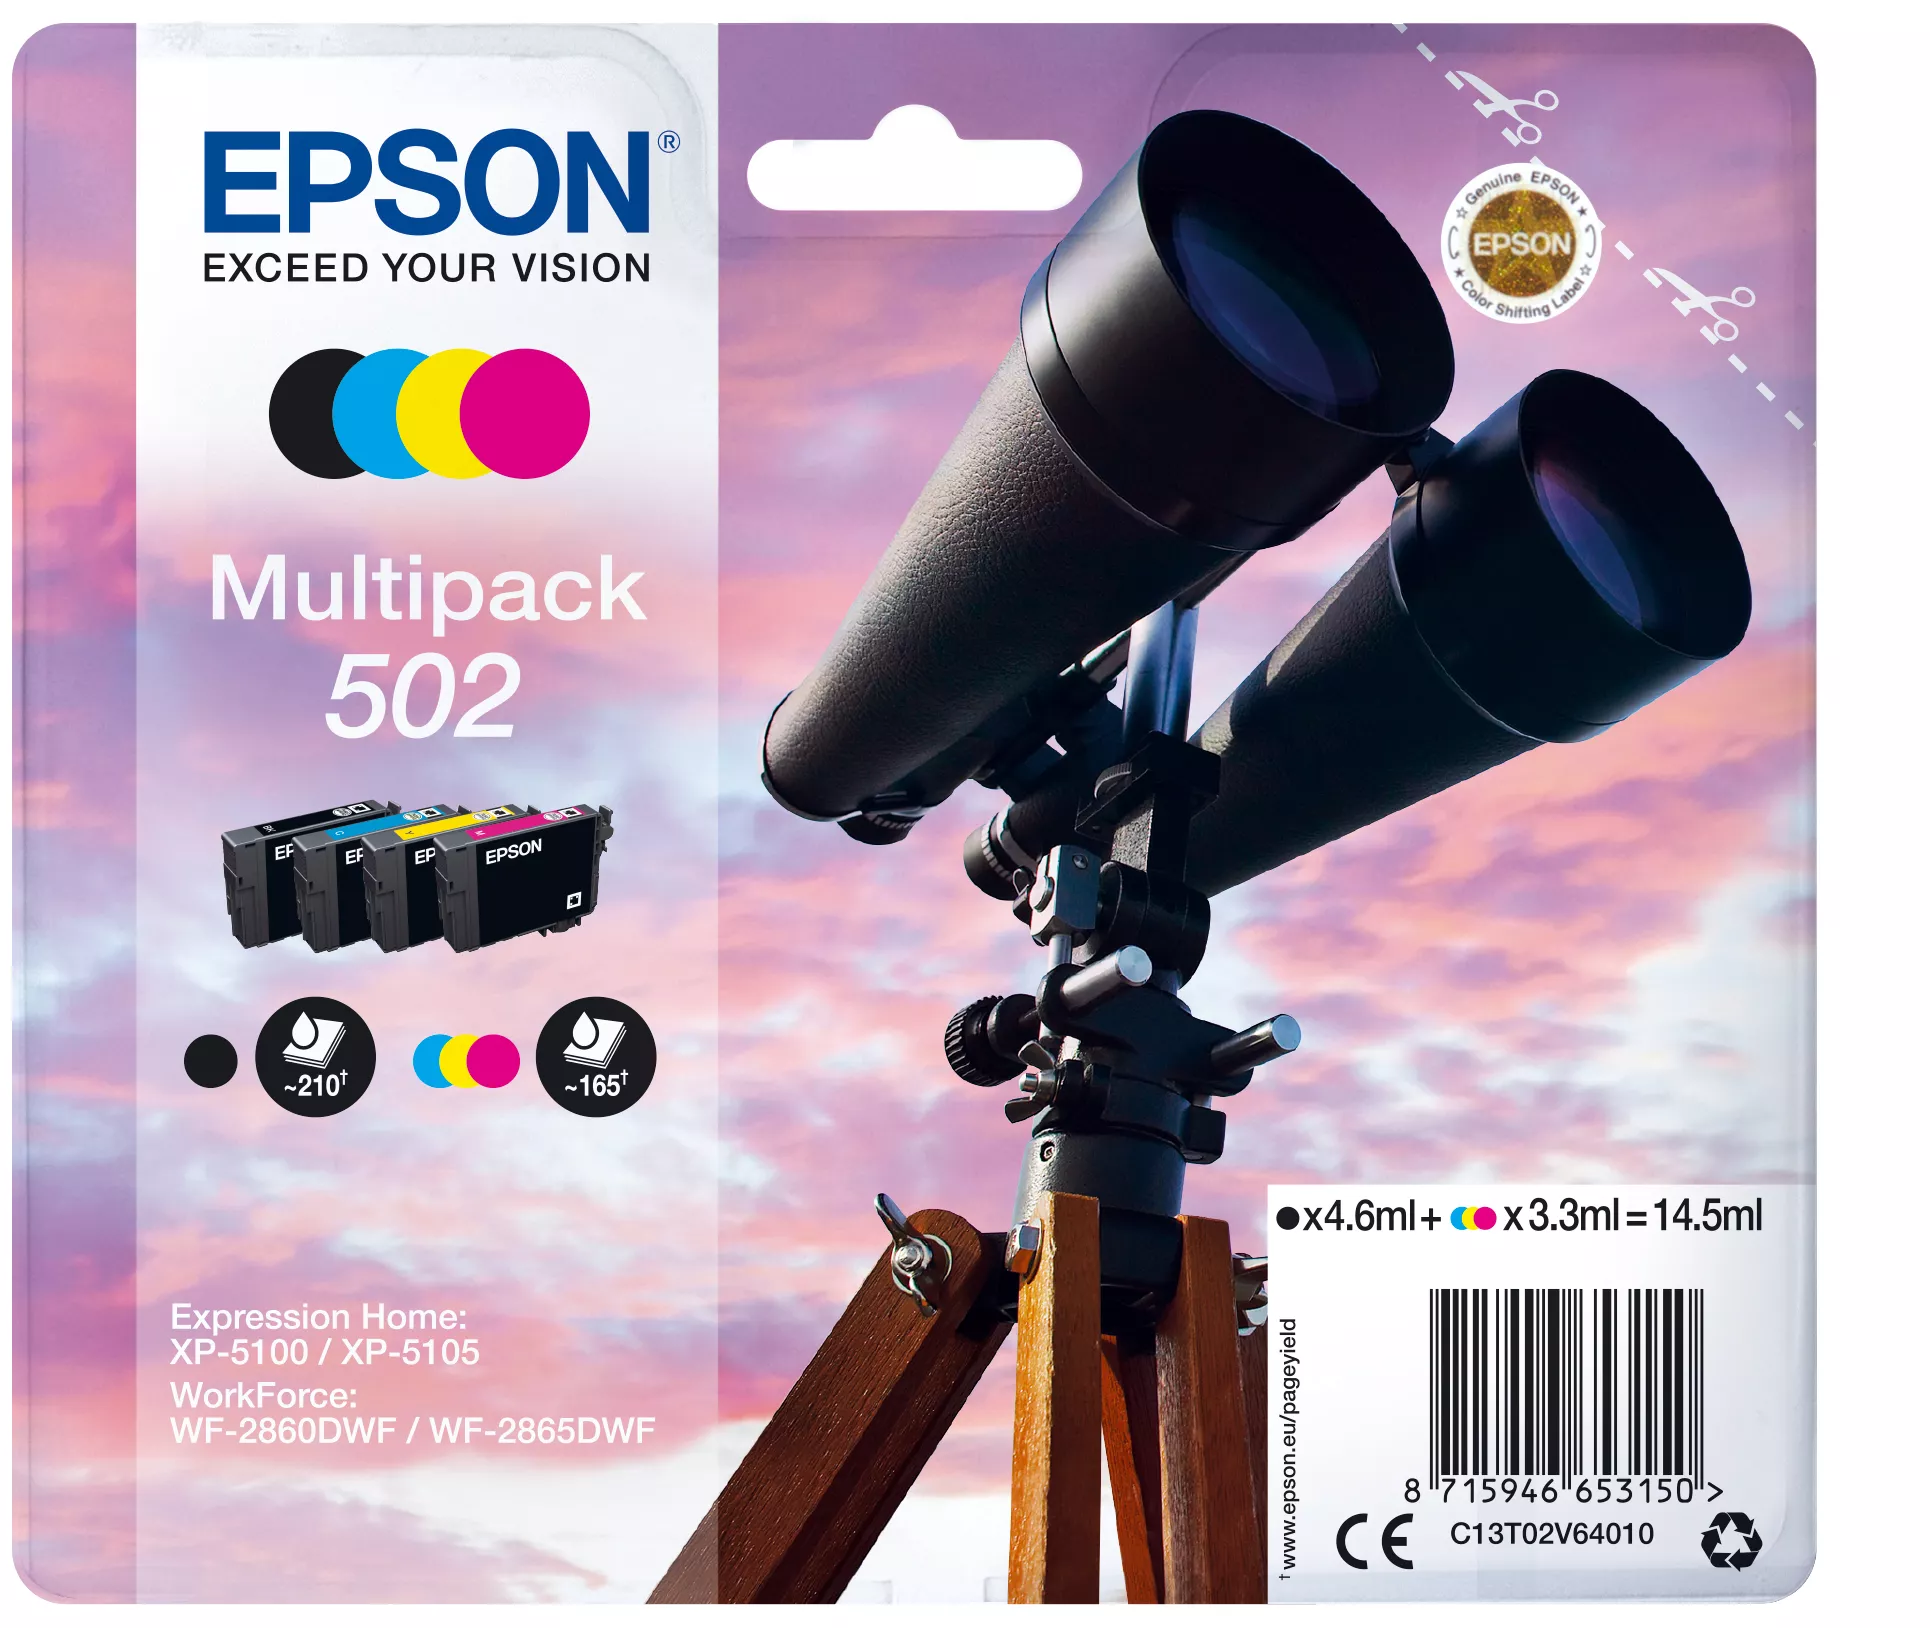 Achat EPSON Multipack 4-colours 502 Ink SEC sur hello RSE